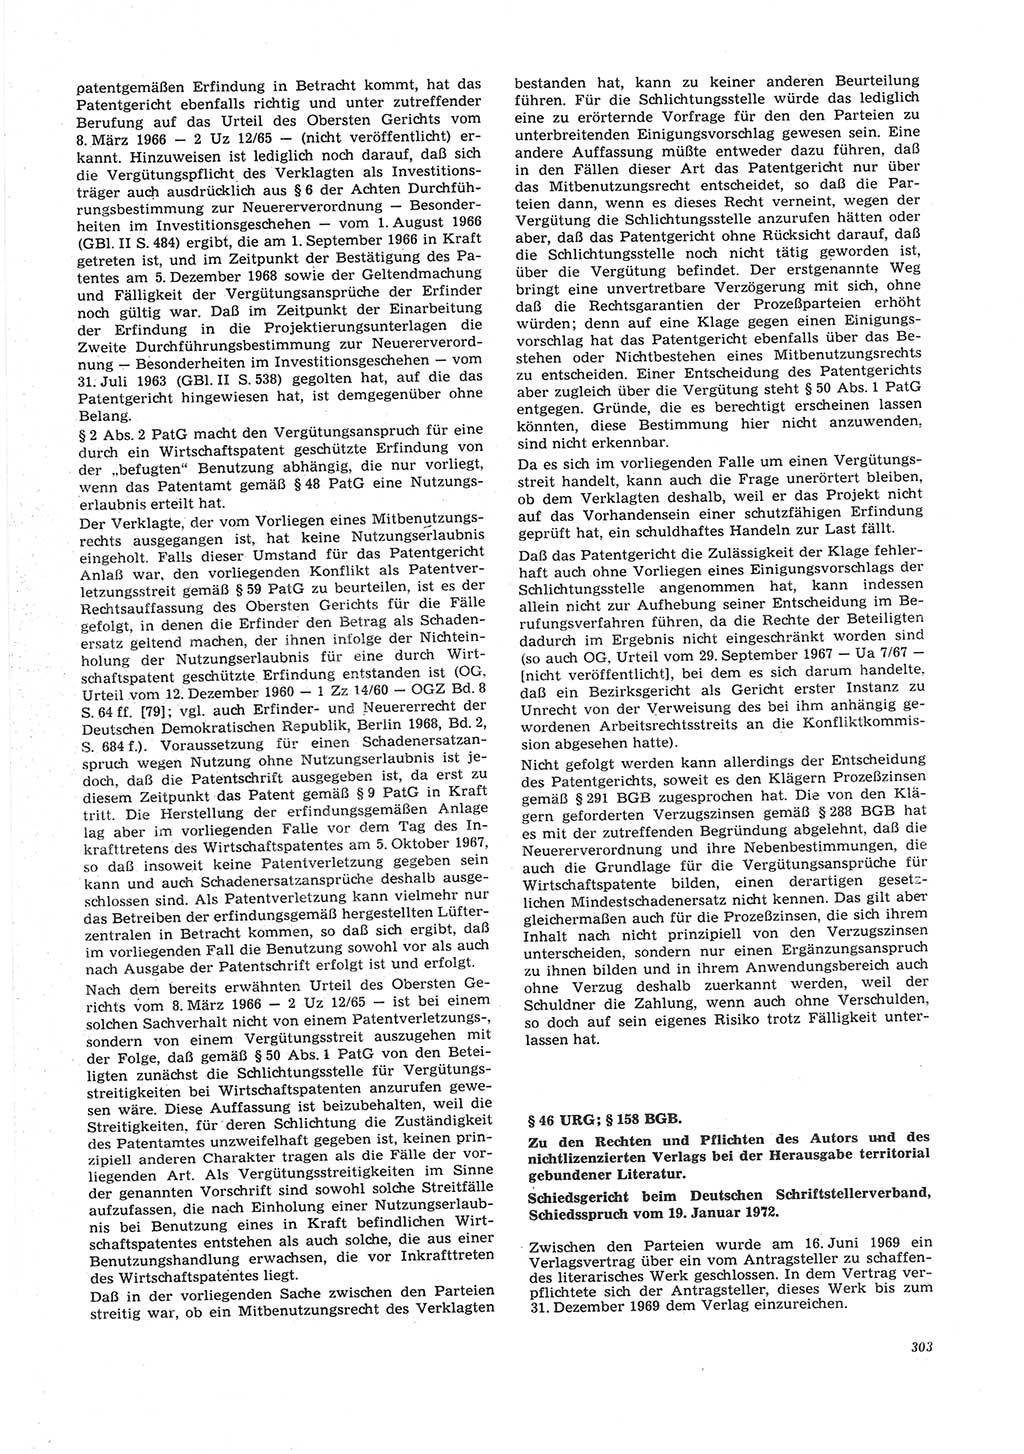 Neue Justiz (NJ), Zeitschrift für Recht und Rechtswissenschaft [Deutsche Demokratische Republik (DDR)], 26. Jahrgang 1972, Seite 303 (NJ DDR 1972, S. 303)